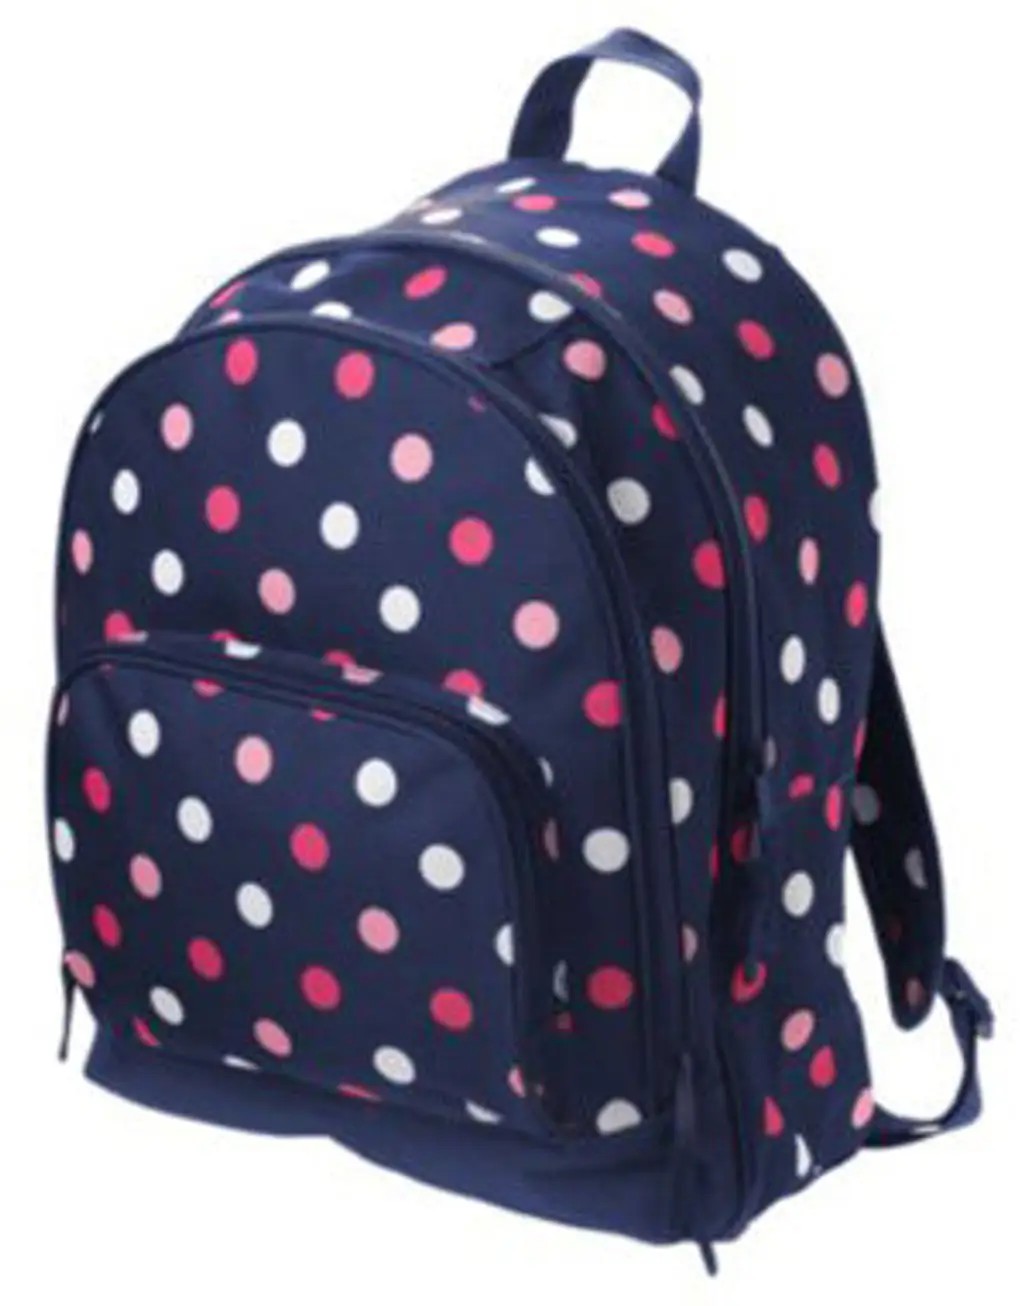 Crazy 8 Polka Dot Backpack